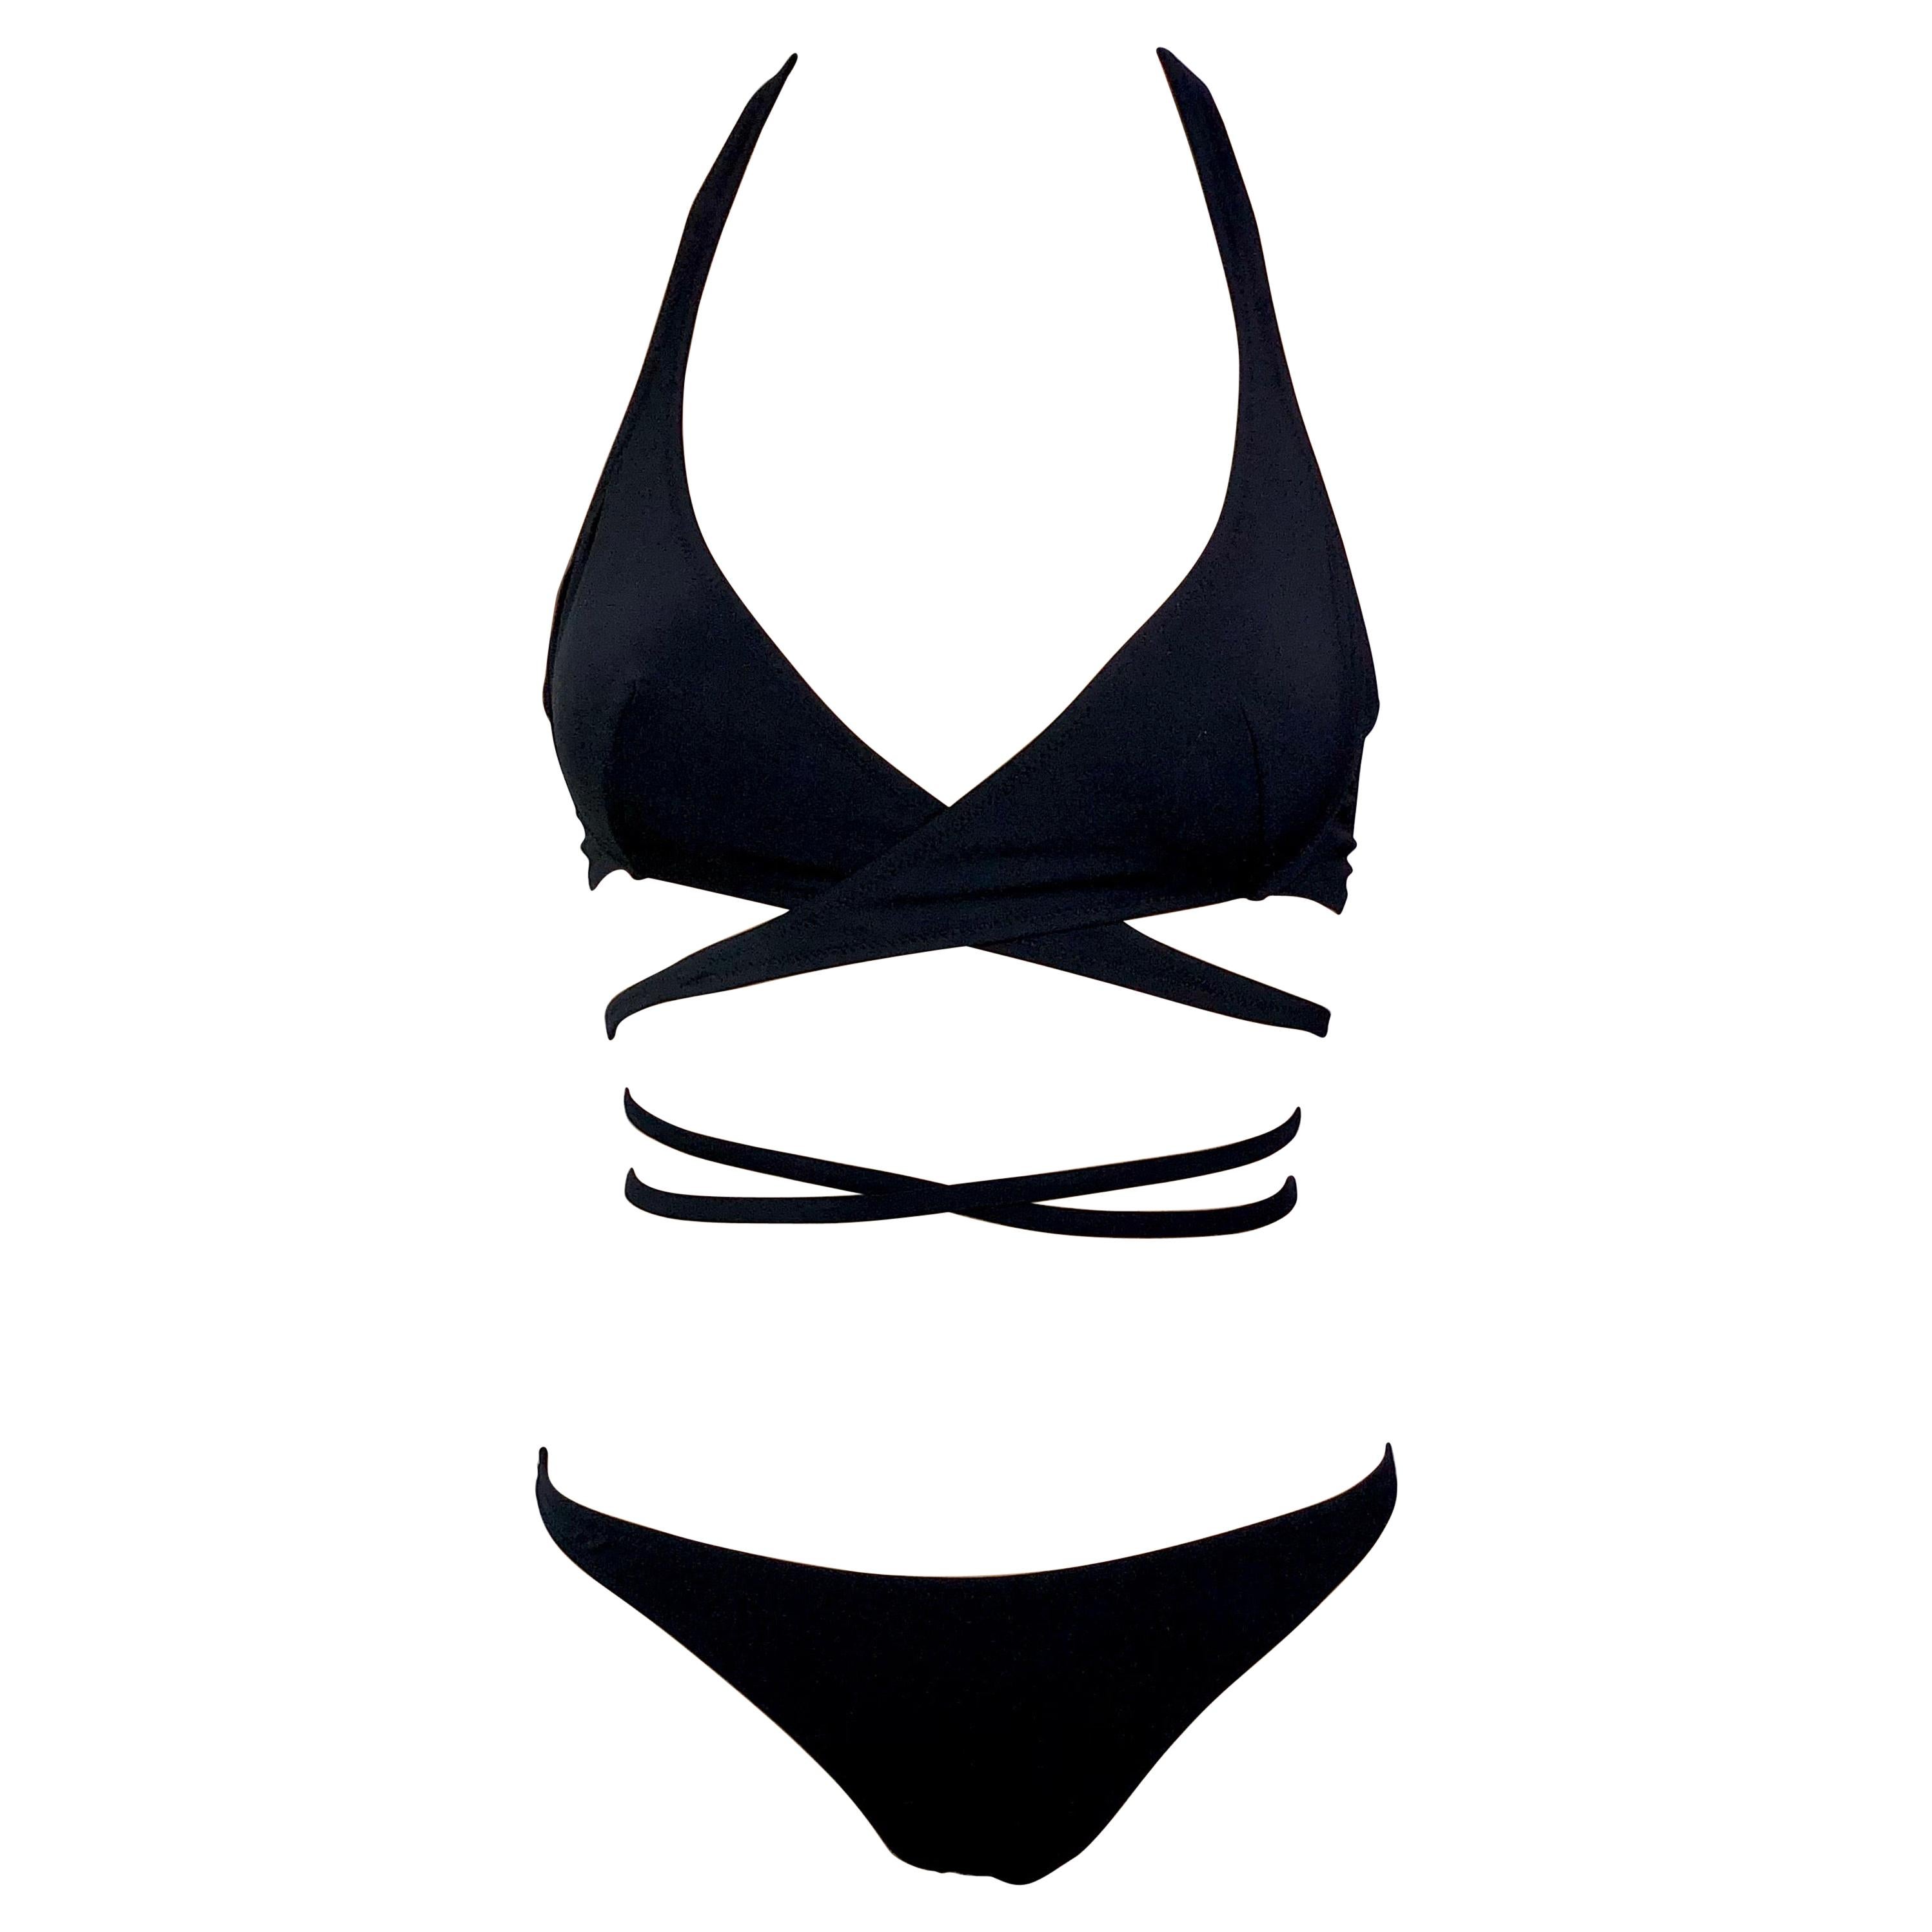 Dolce & Gabbana S/S 2006 Wrap Tie Up Black Bikini Swimwear Swimsuit 2 Piece Set